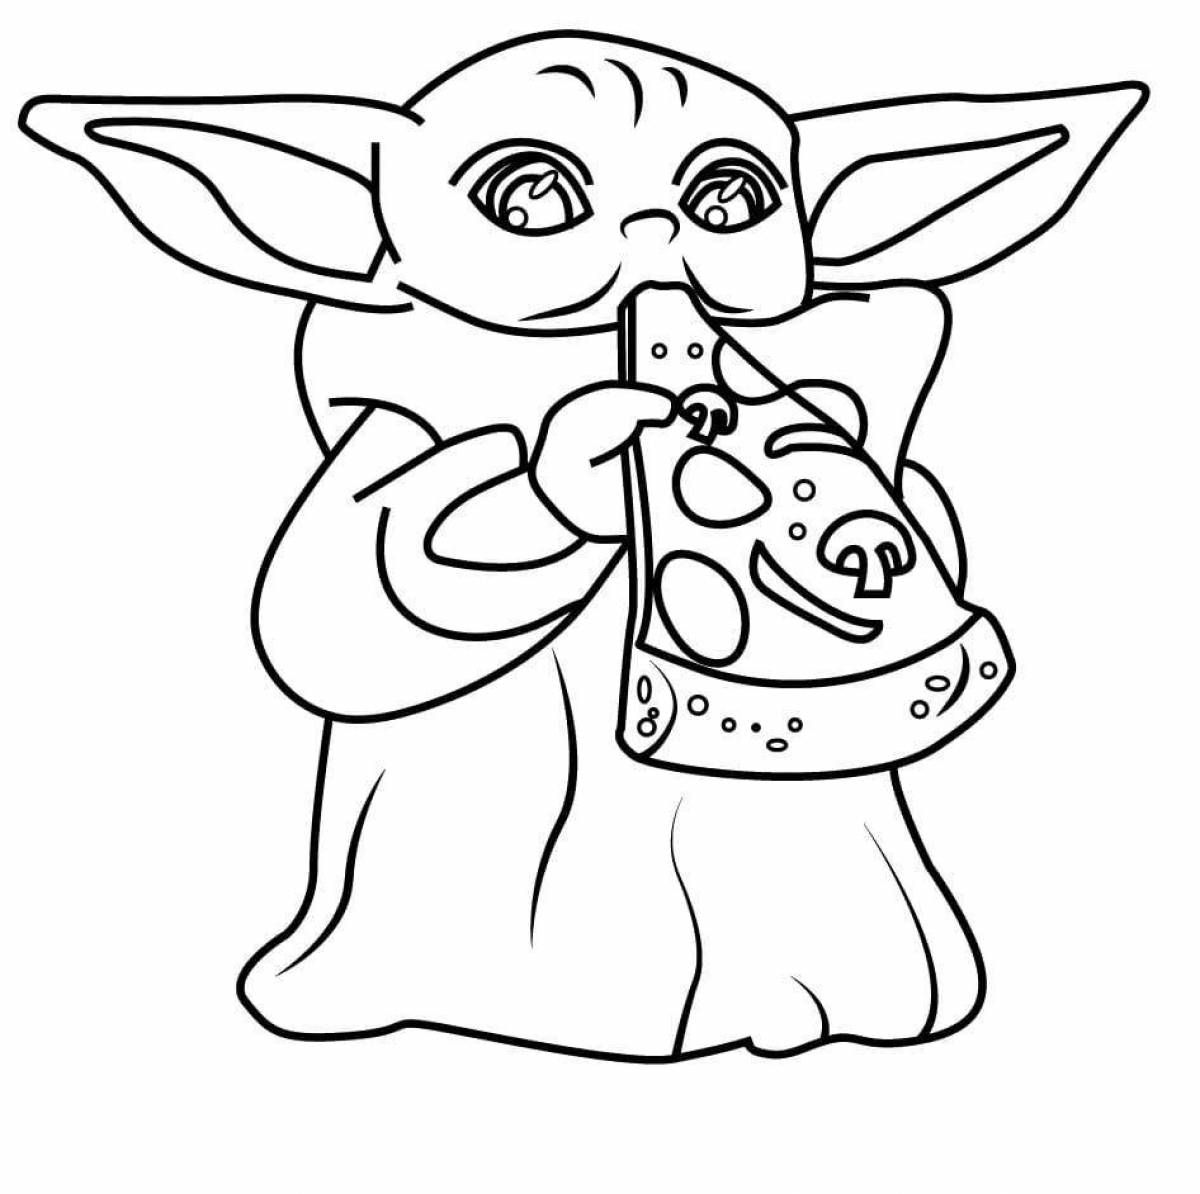 Coloring book adorable baby Yoda